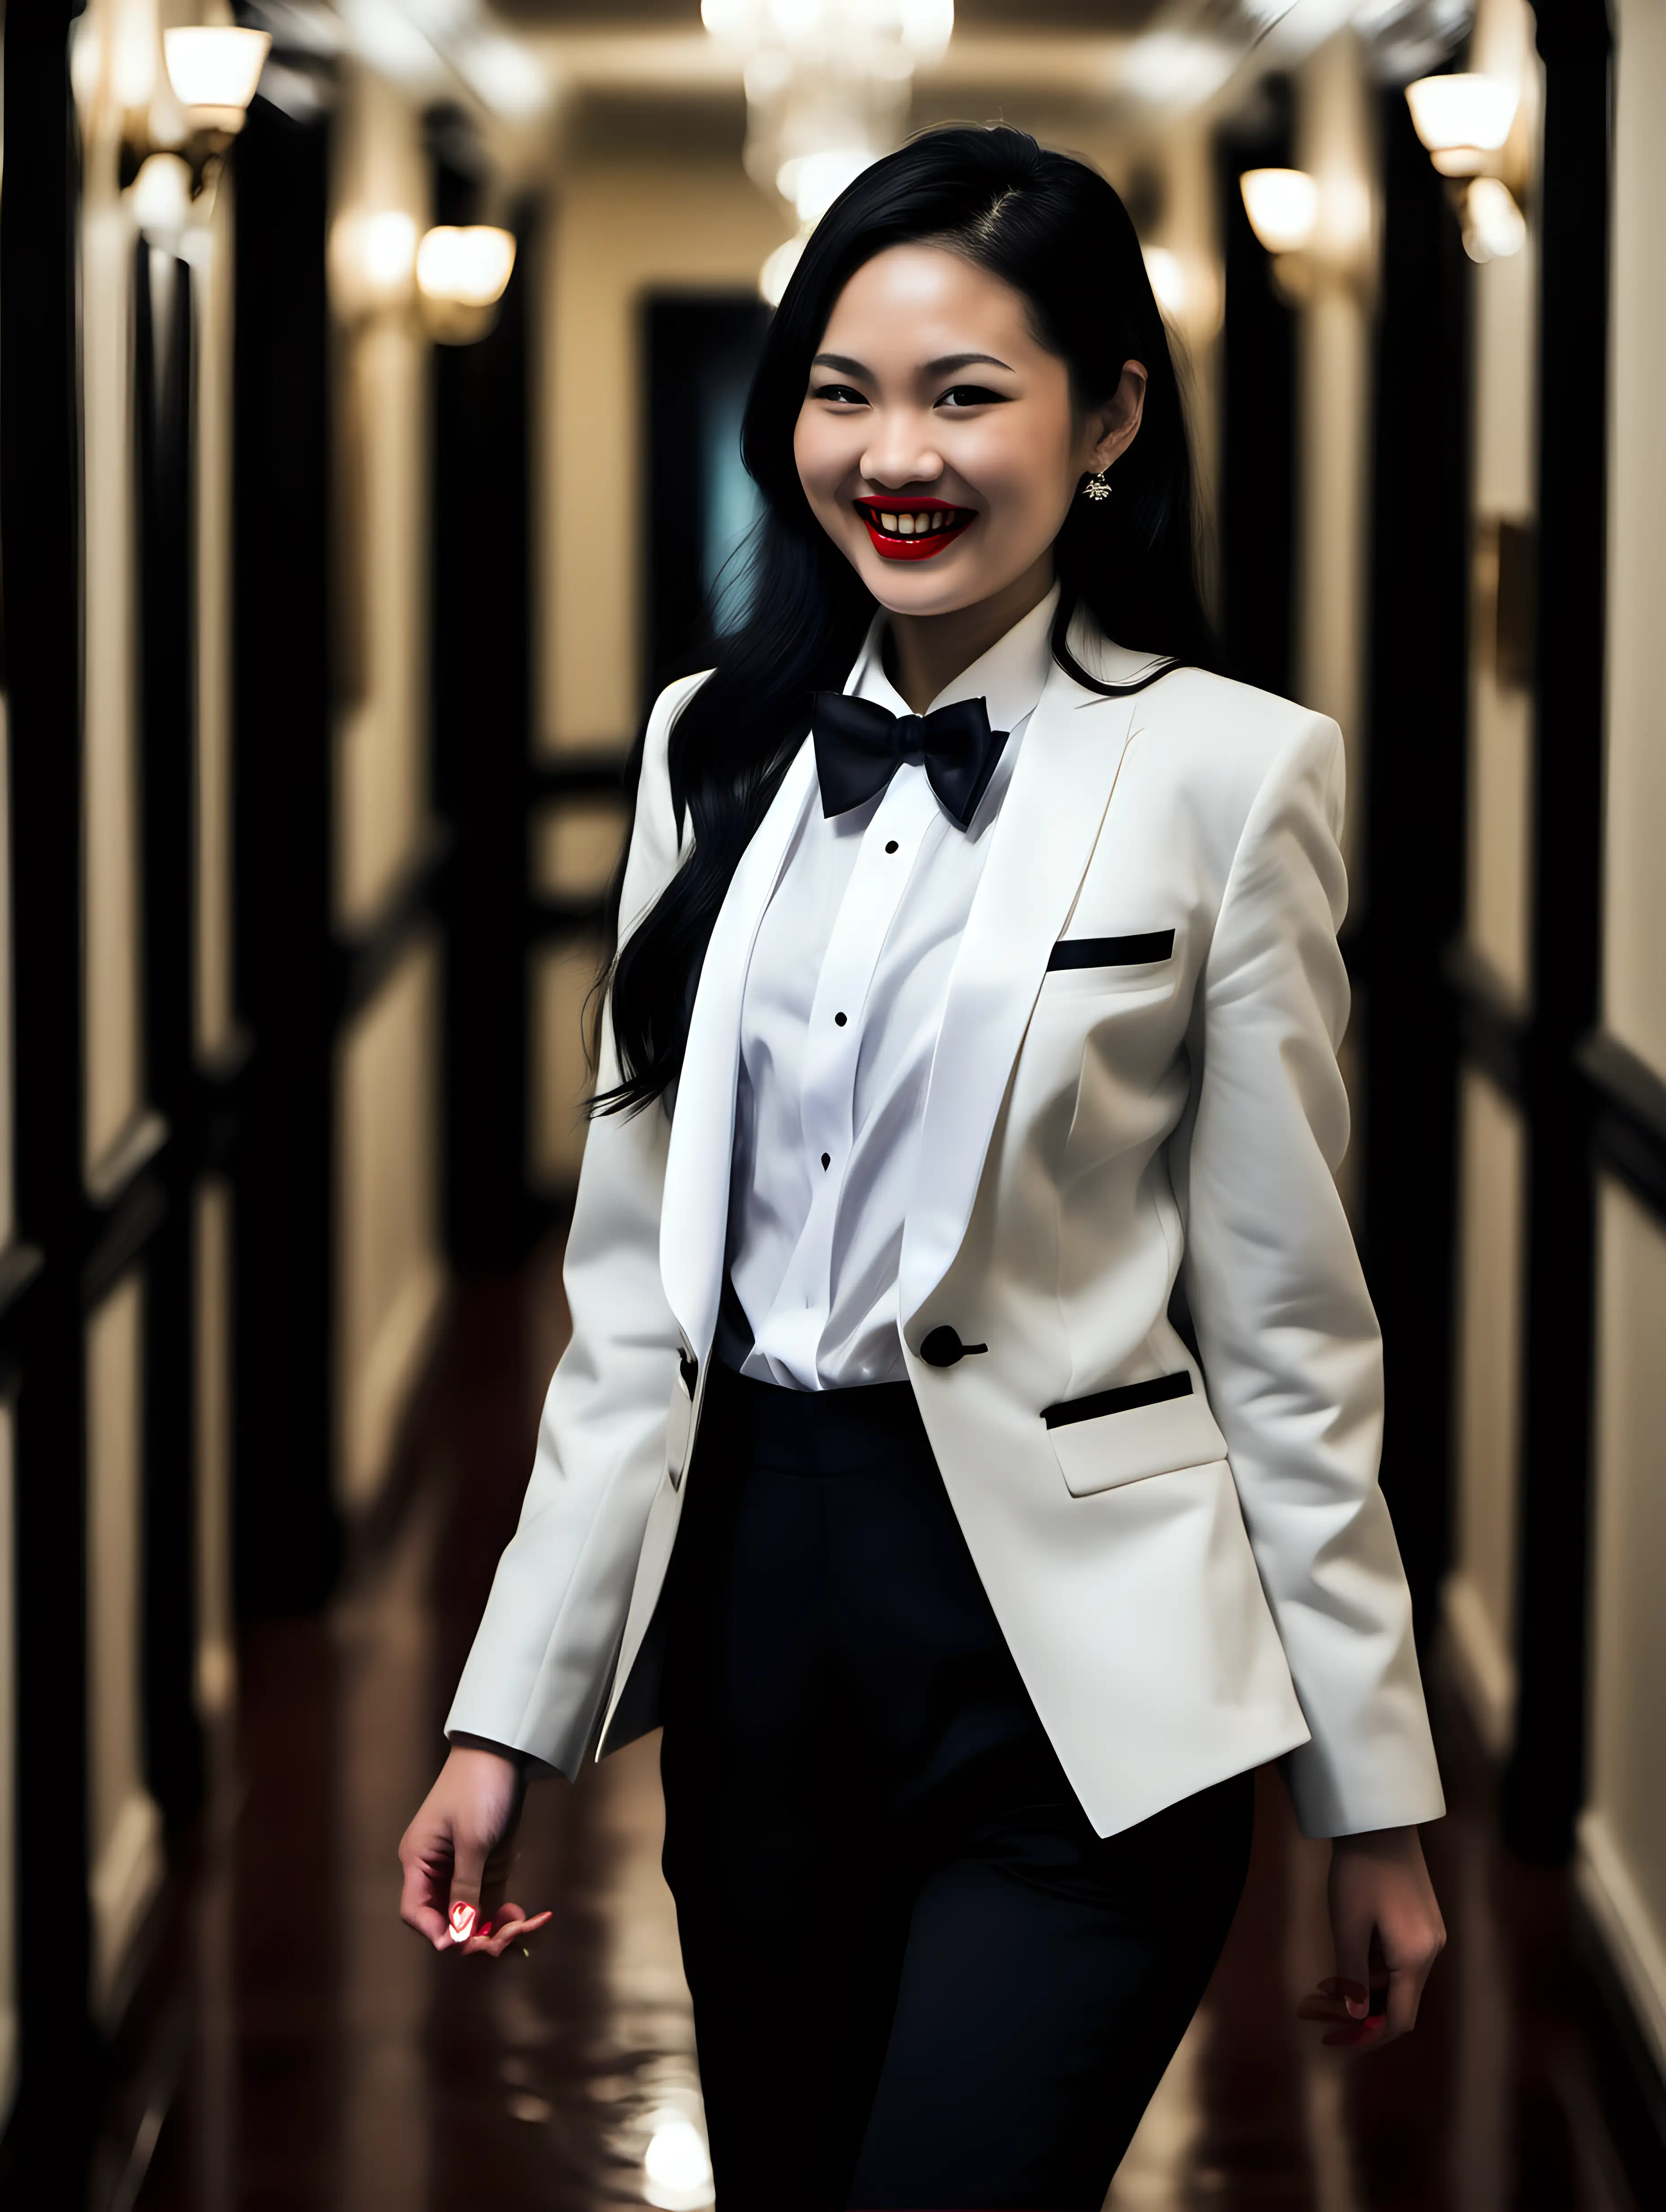 Elegant-Vietnamese-Woman-in-Tuxedo-Walking-through-Mansion-Hallway-at-Night